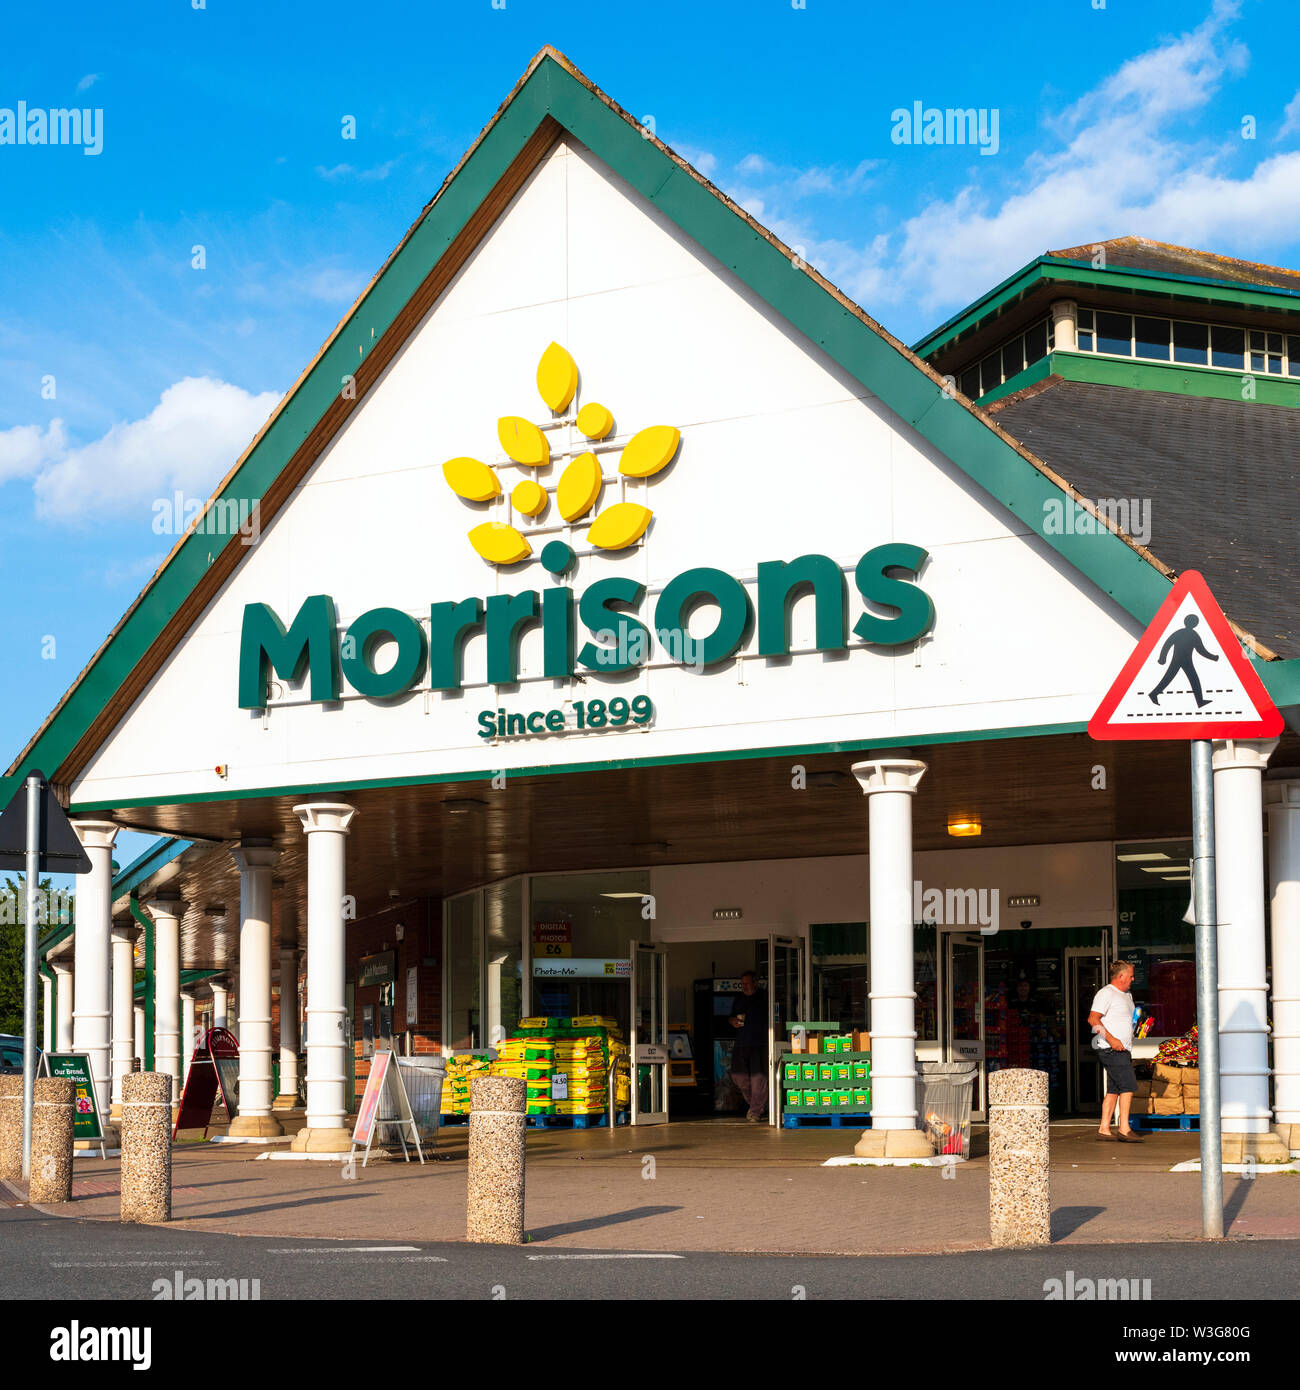 Morrisons supermarket, UK. Stock Photo